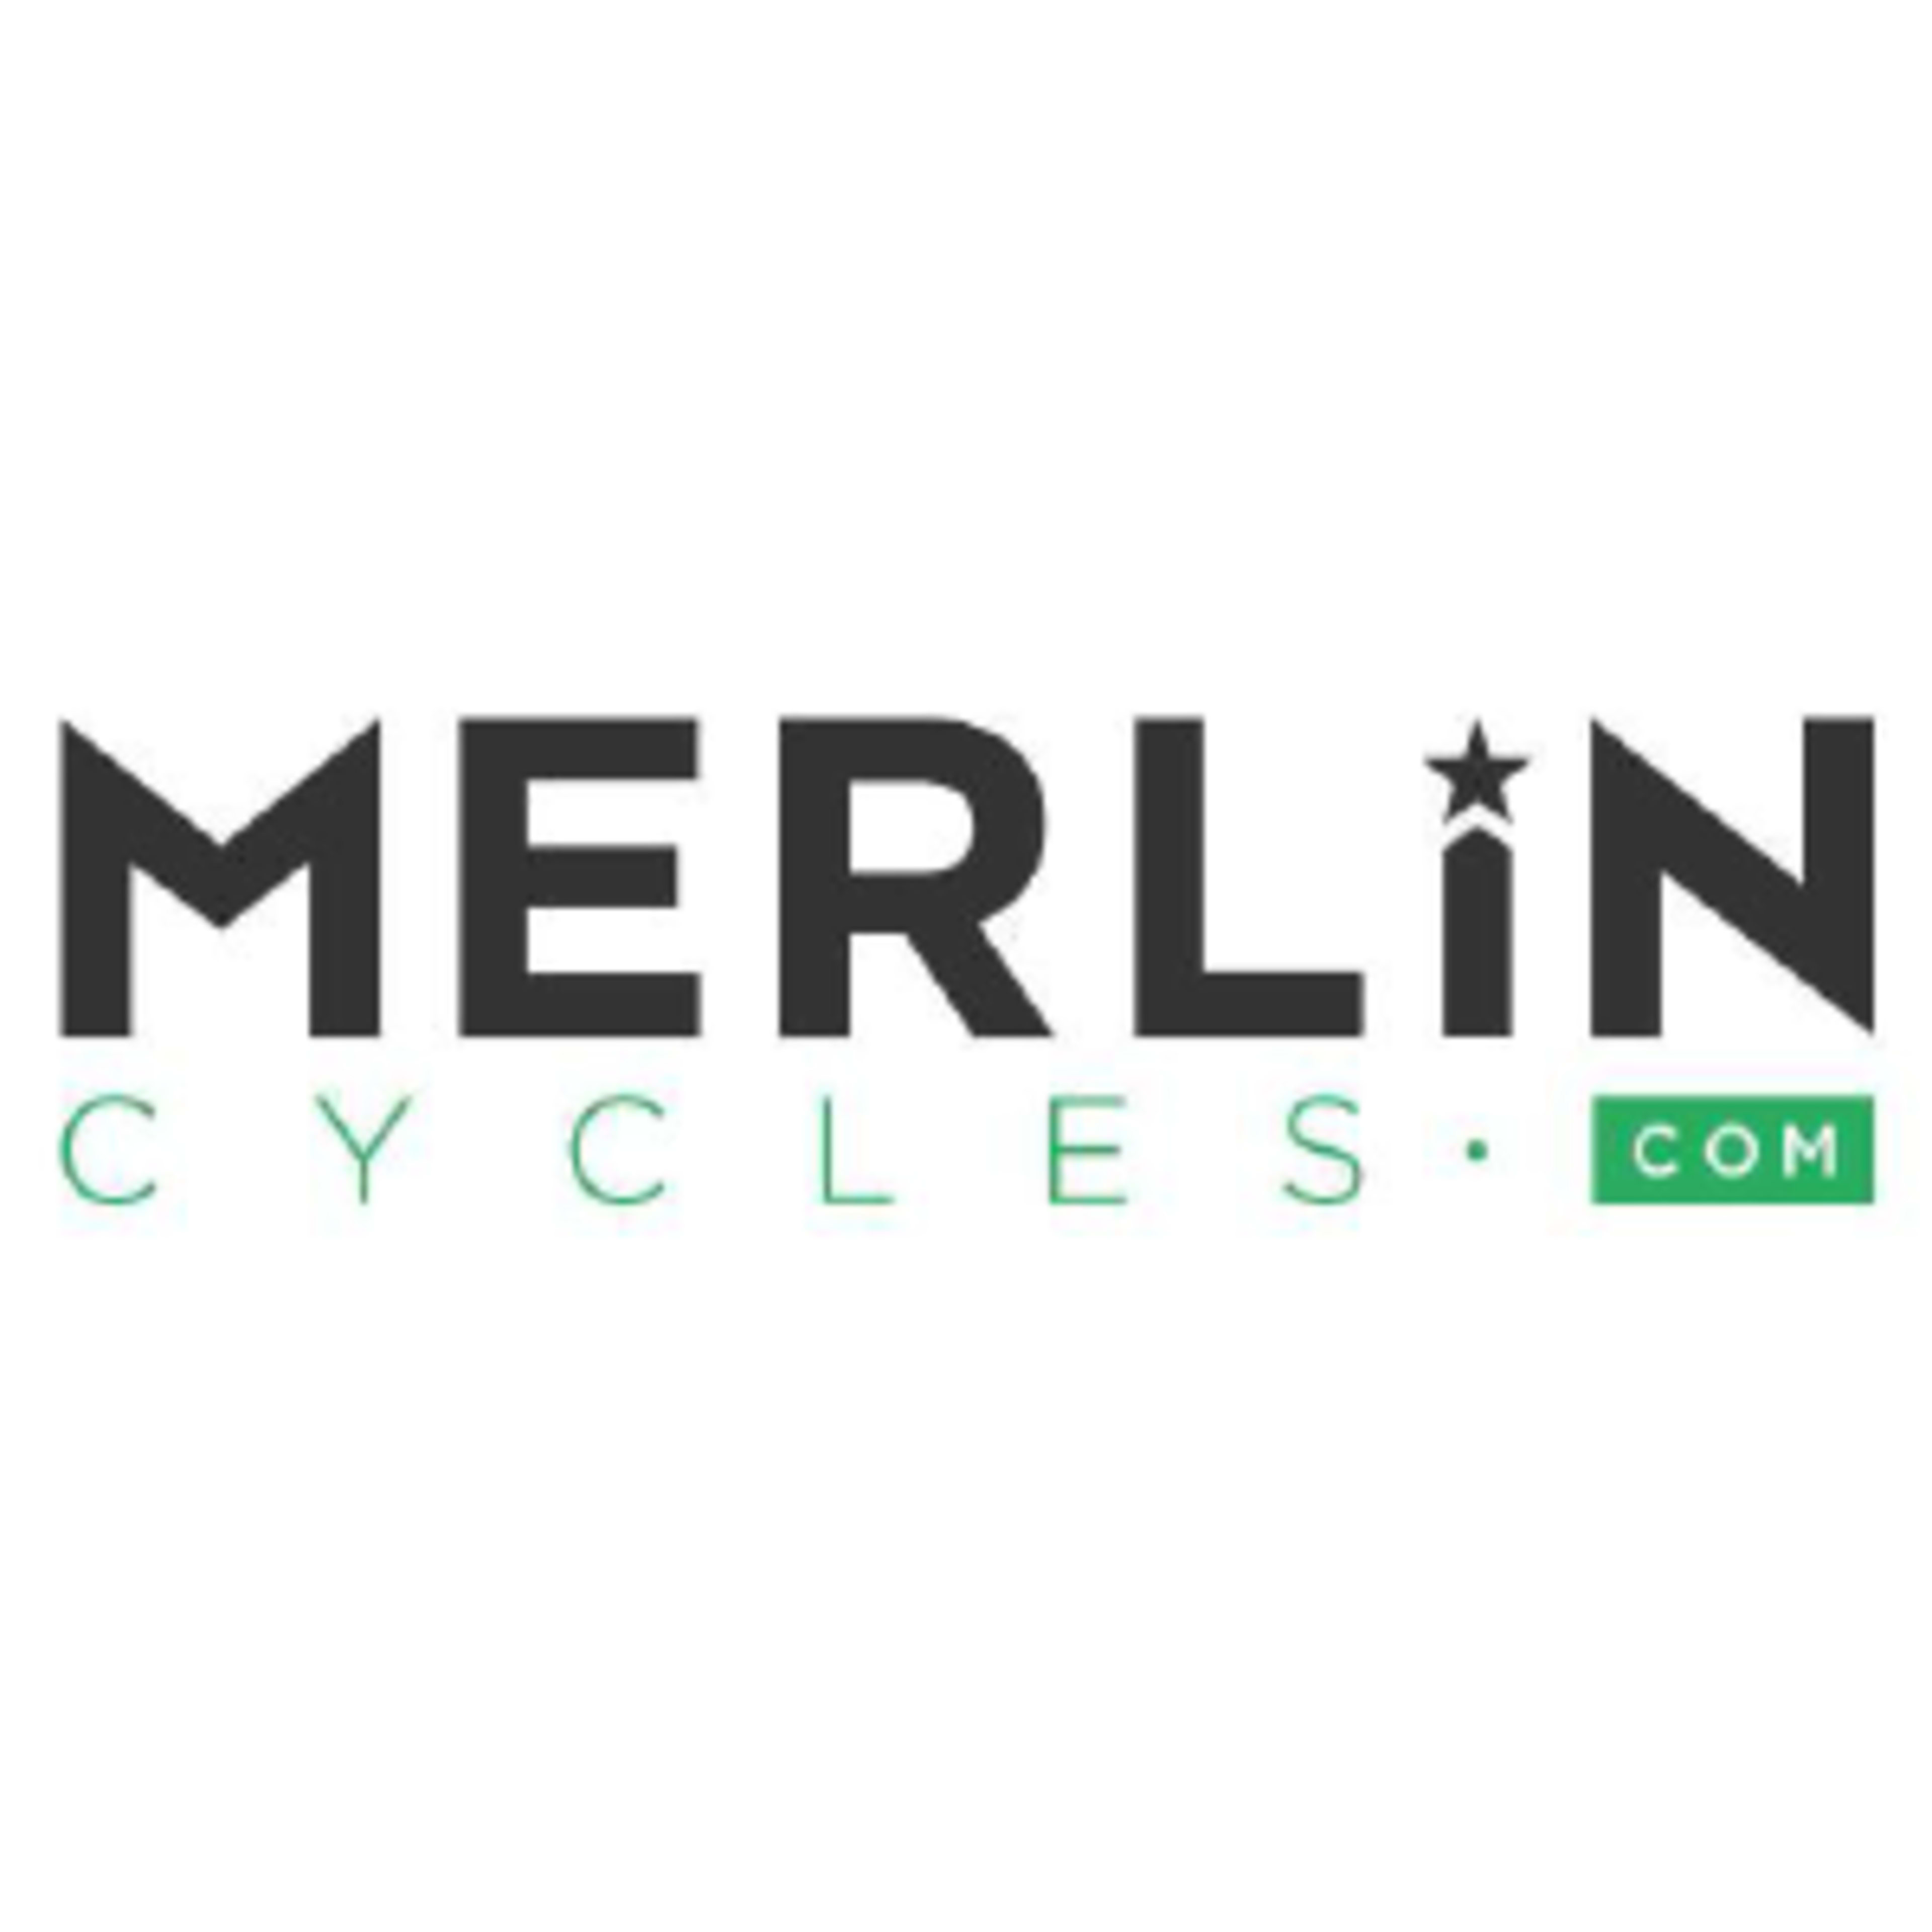 Merlin CyclesCode